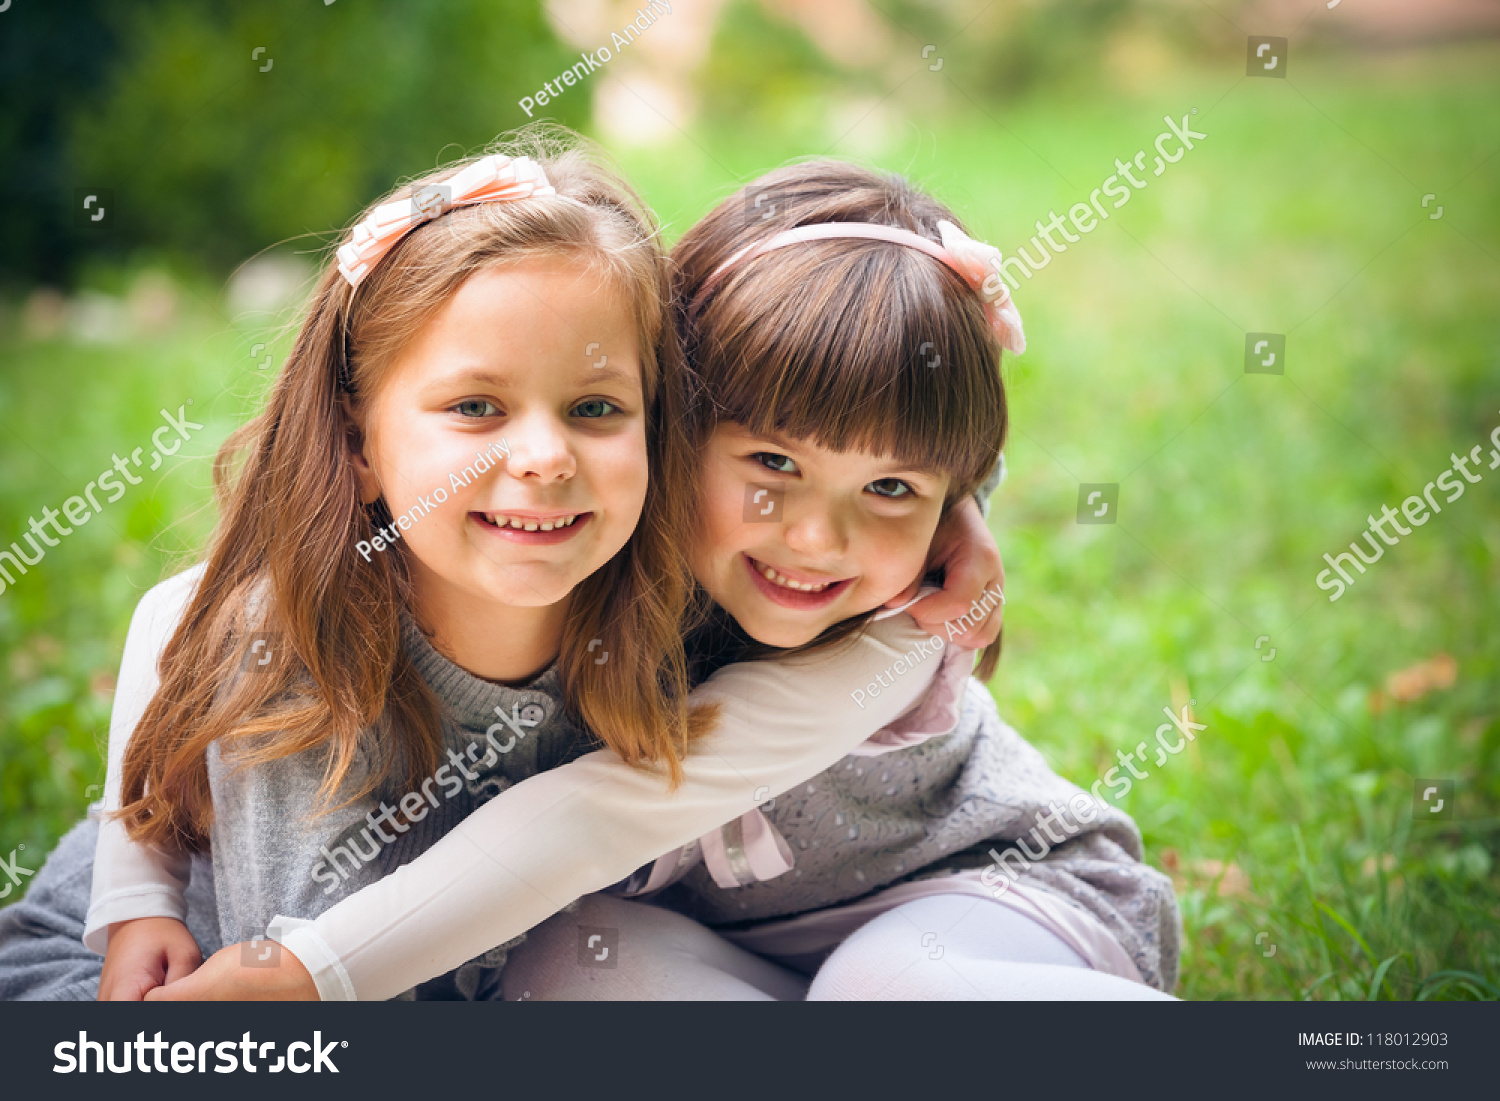 Happy Little Girlfriends In Park Stock Photo 118012903 : Shutterstock